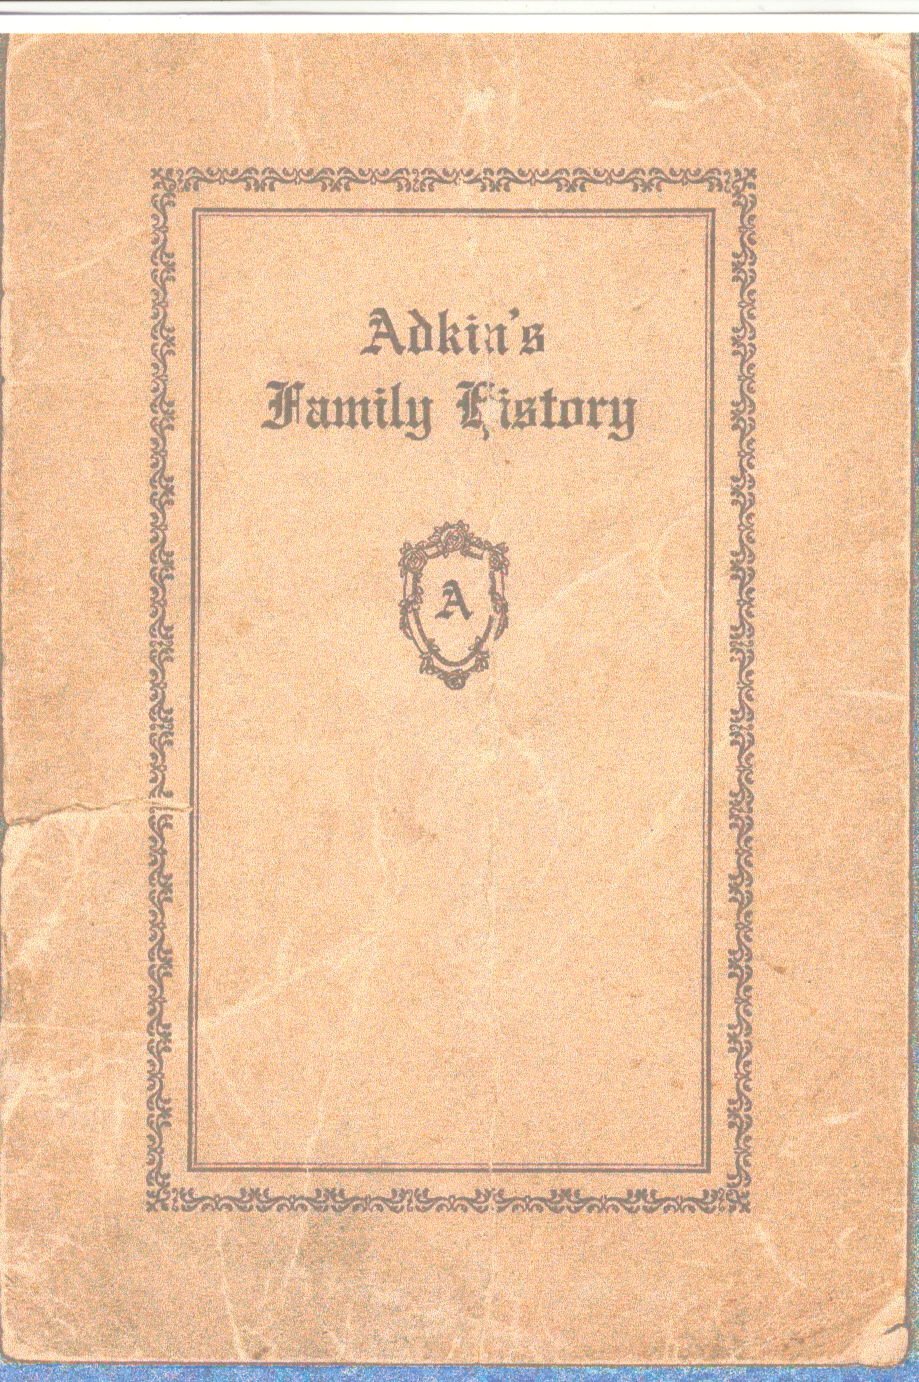 Adkins Family-Adkins Family Book.jpg